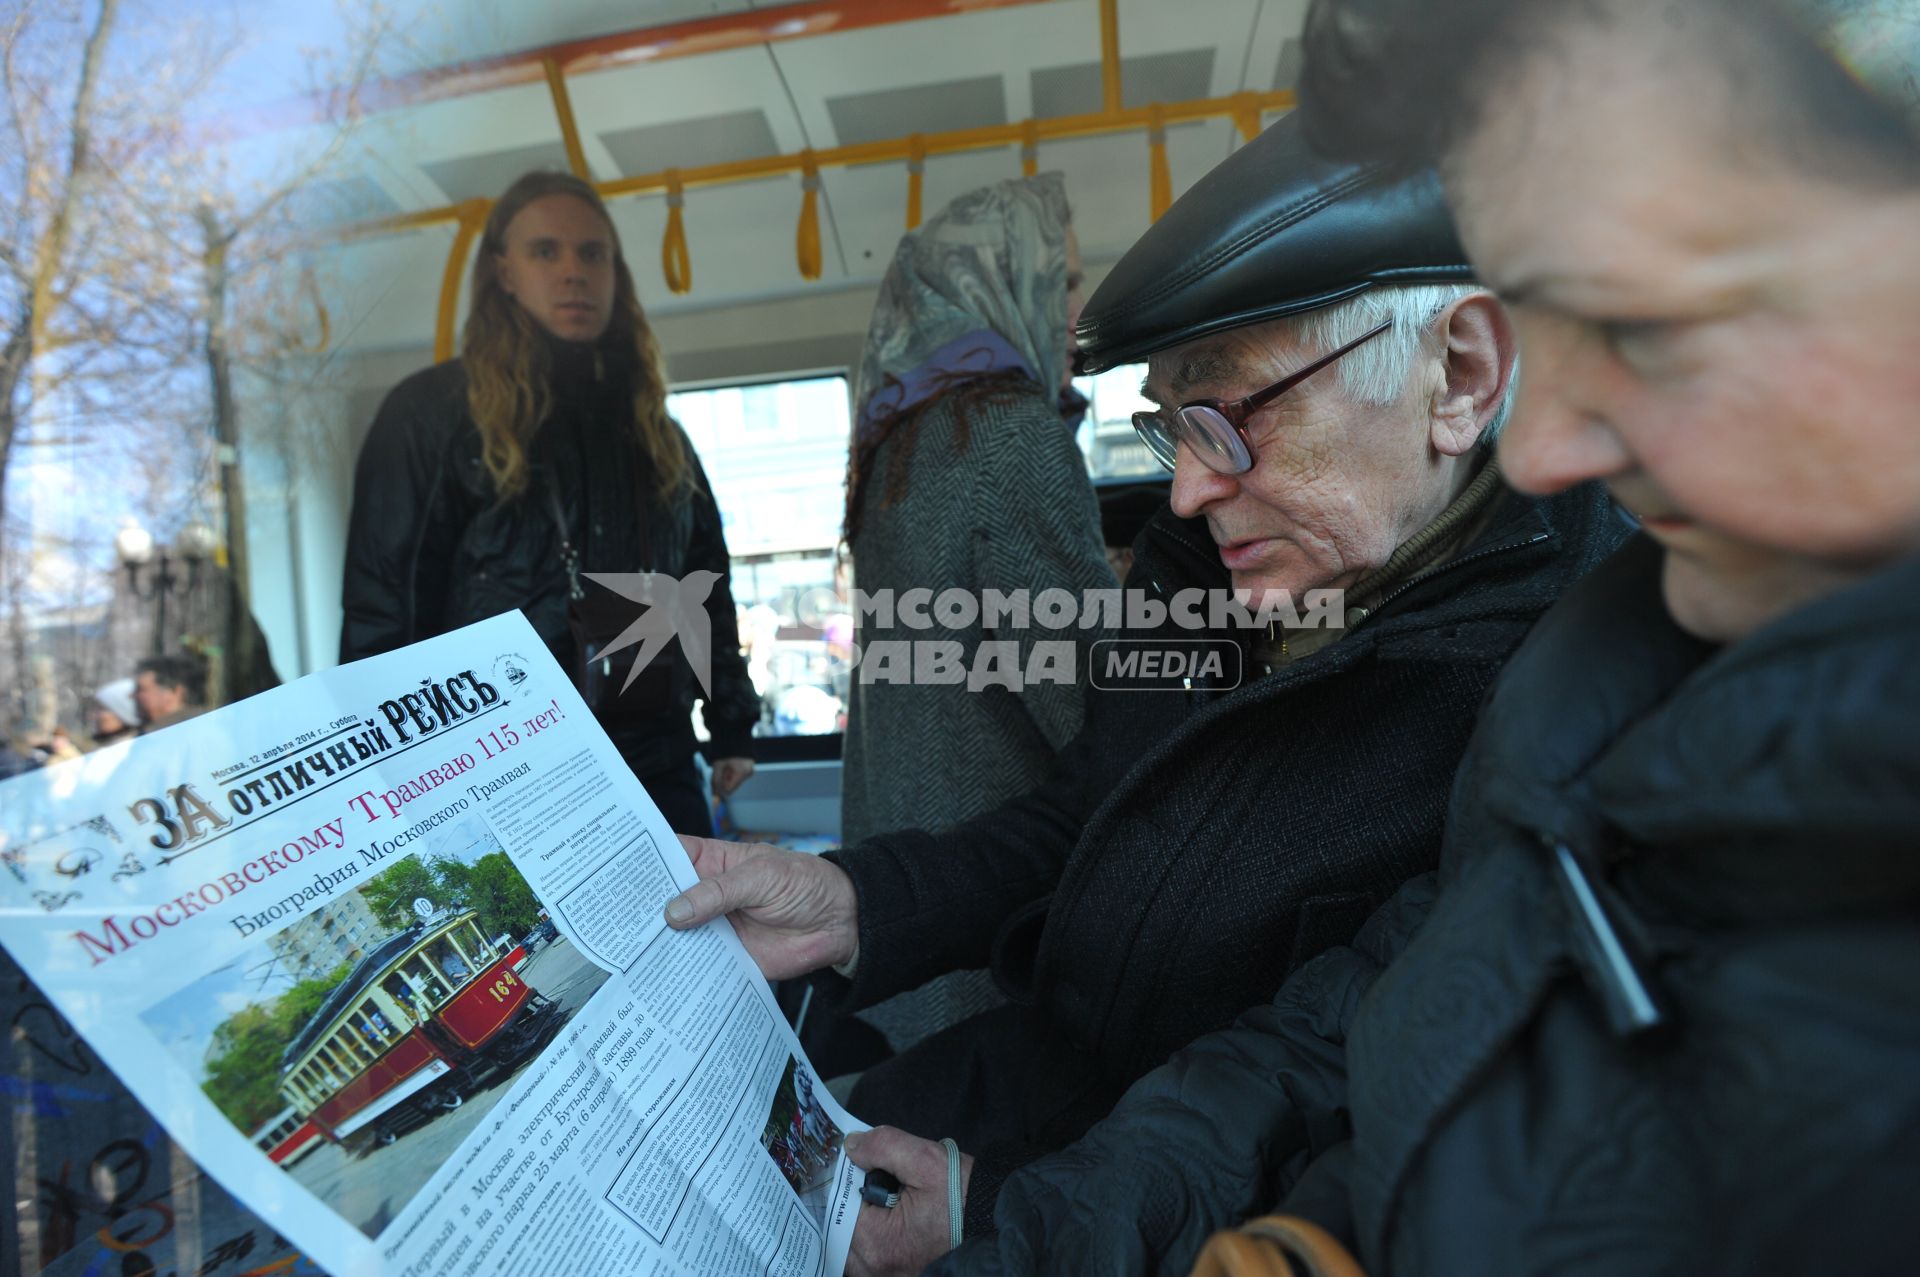 Праздничный парад трамваев, посвященный 115-летию этого вида транспорта. На снимке: пожилые мужчина и женщина читают газету.